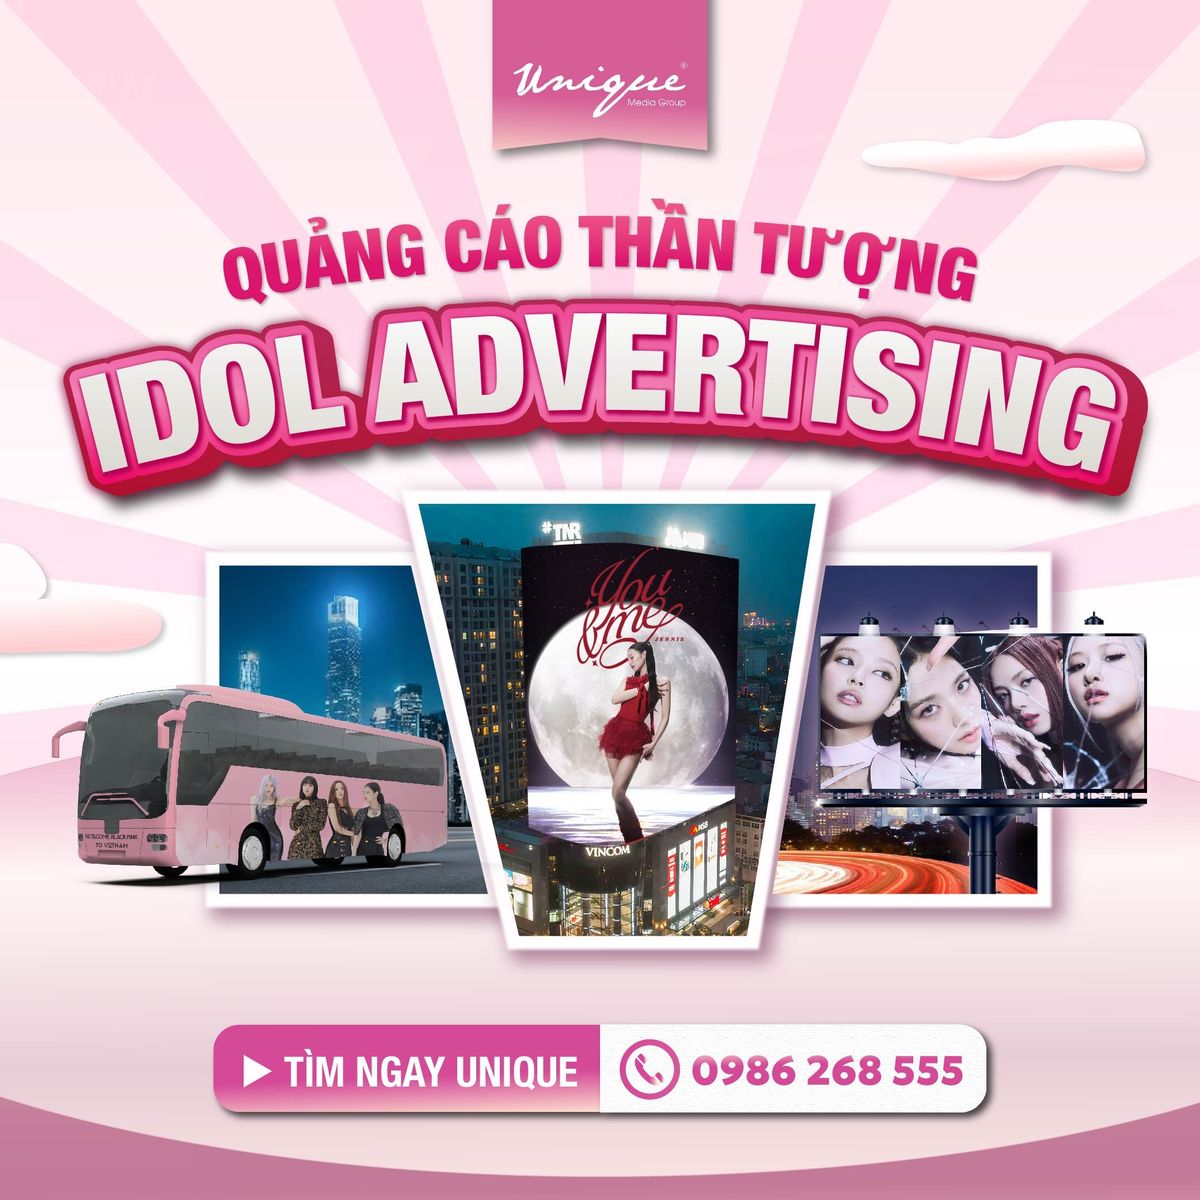 Unique OOH cung cấp Dịch vụ quảng cáo thần tượng (Idol Advertising) toàn quốc